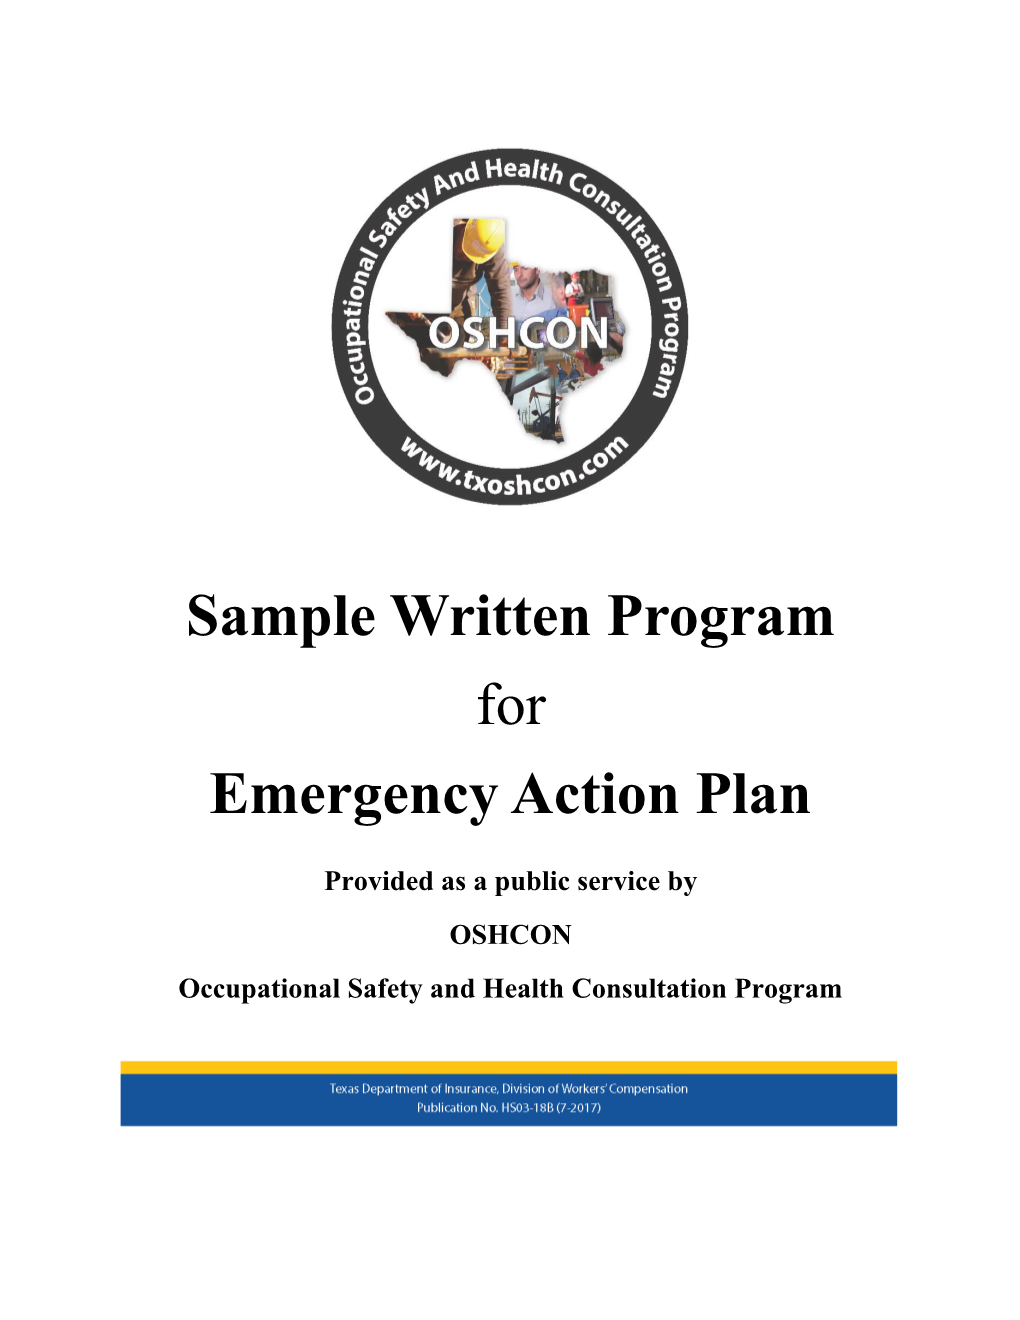 Sample Written Program for Emergency Action Plan